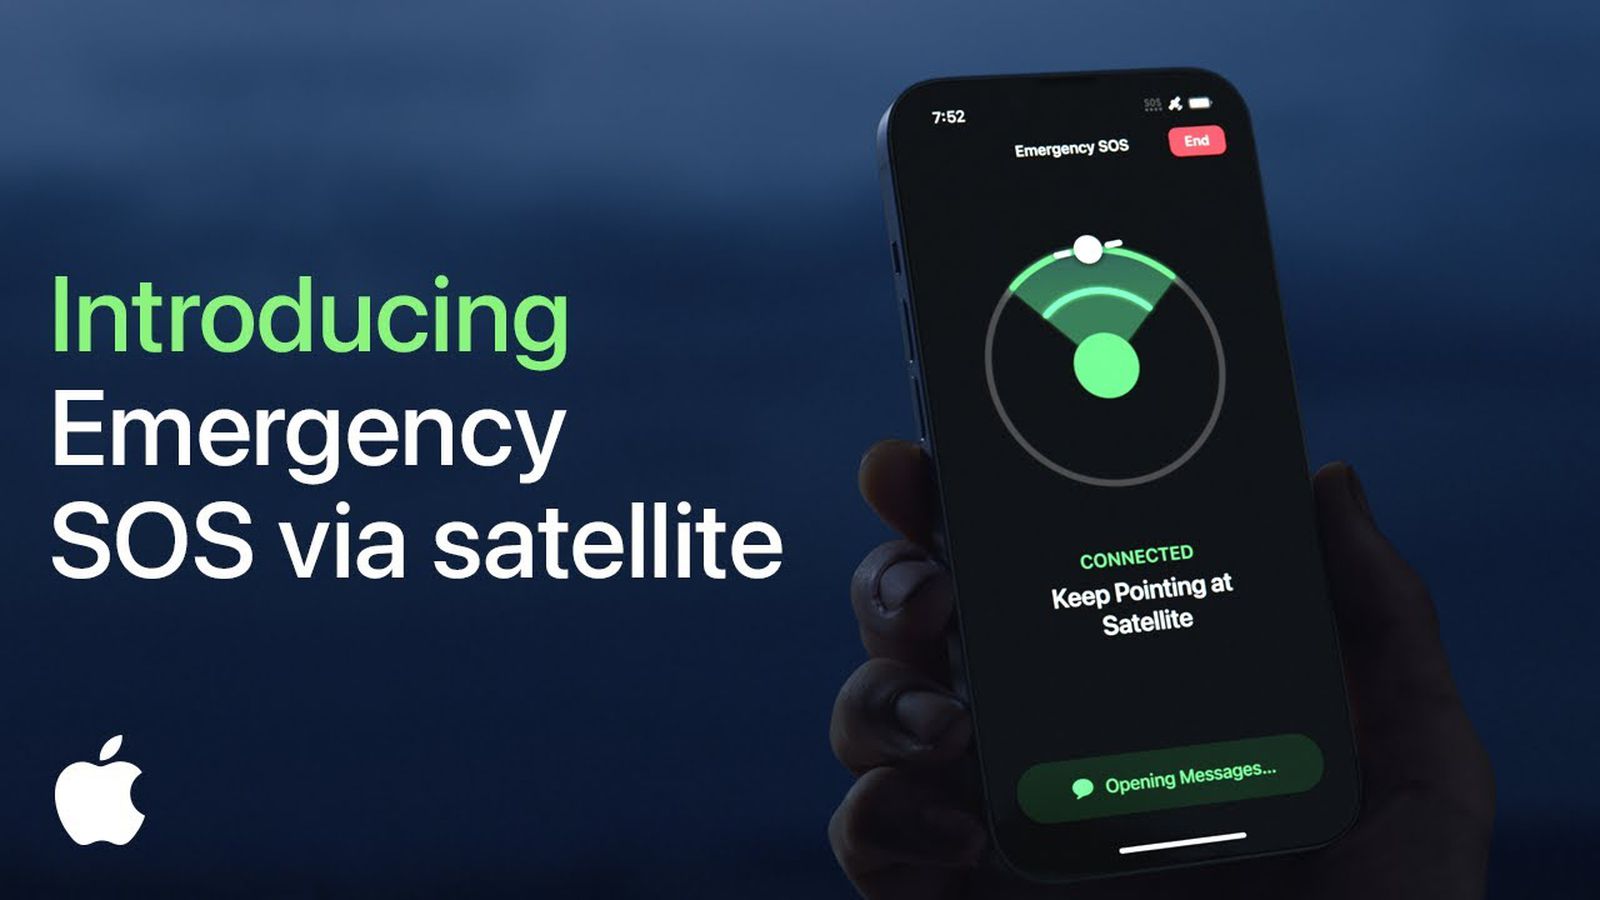 SpaceX, la empresa de Elon Musk, lanzará satélites para la función de emergencia SOS de Apple en los iPhones.